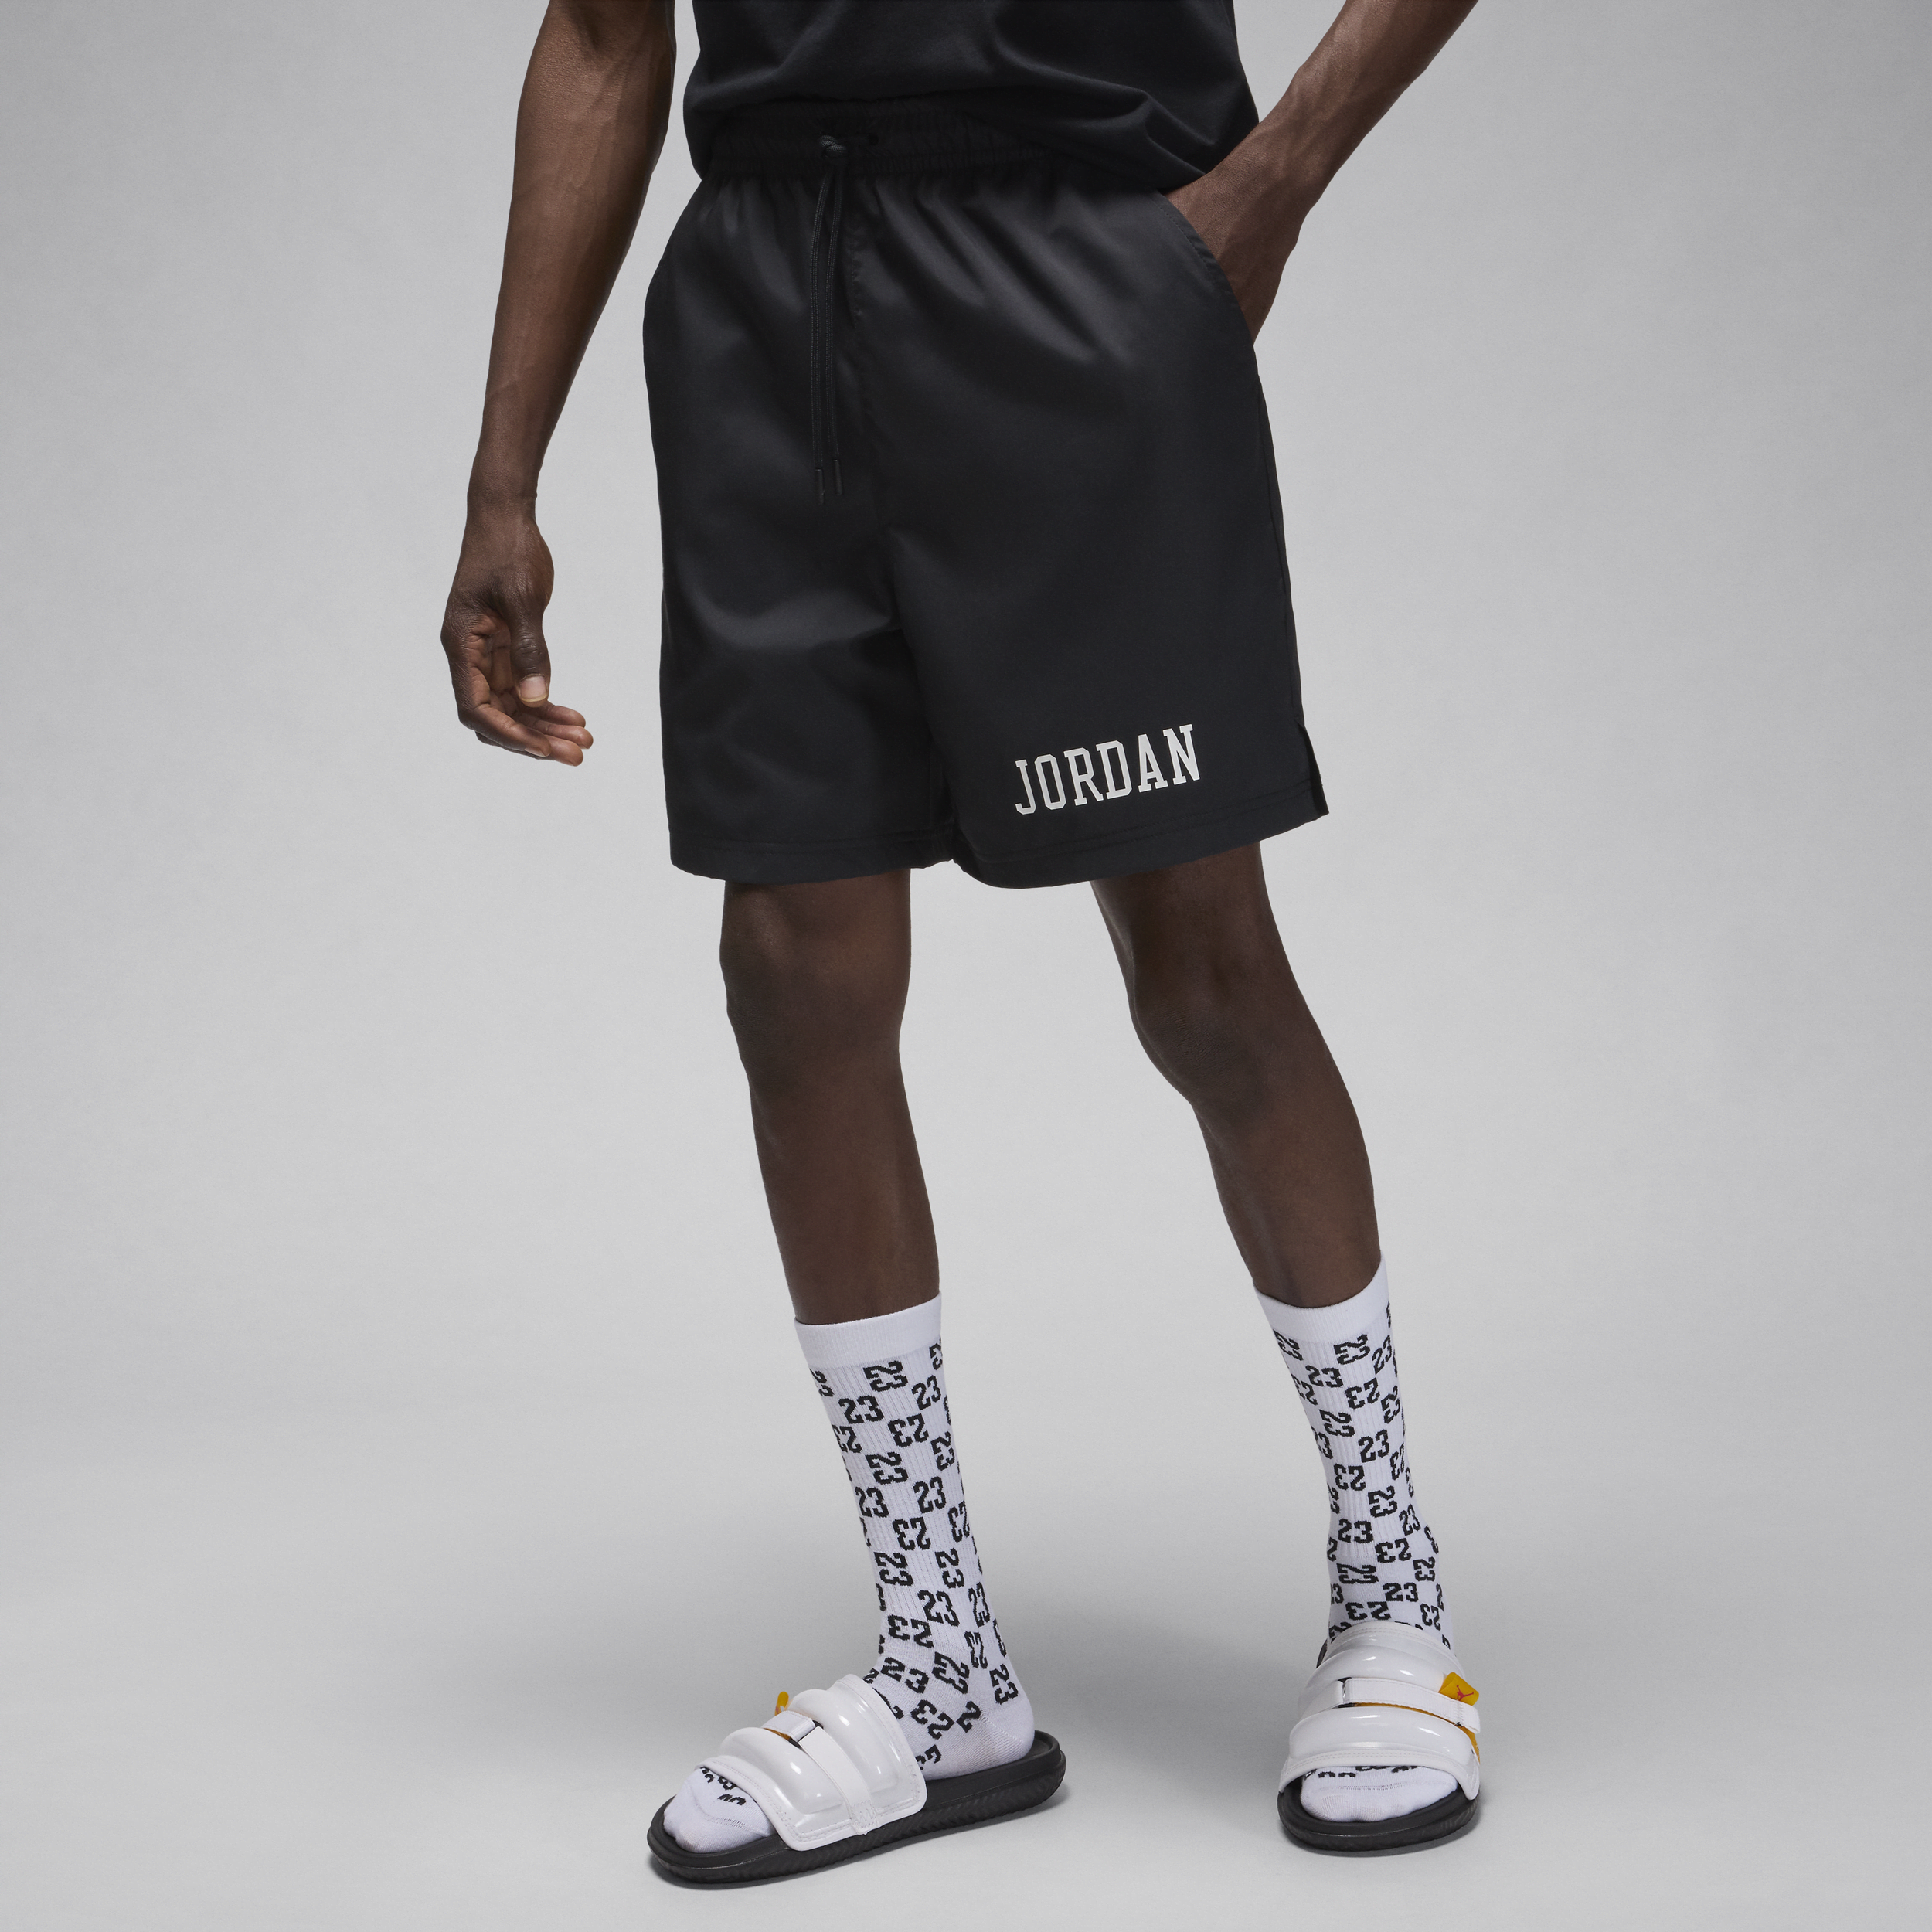 Jordan Essentials Pantalón corto piscina - Hombre - Negro